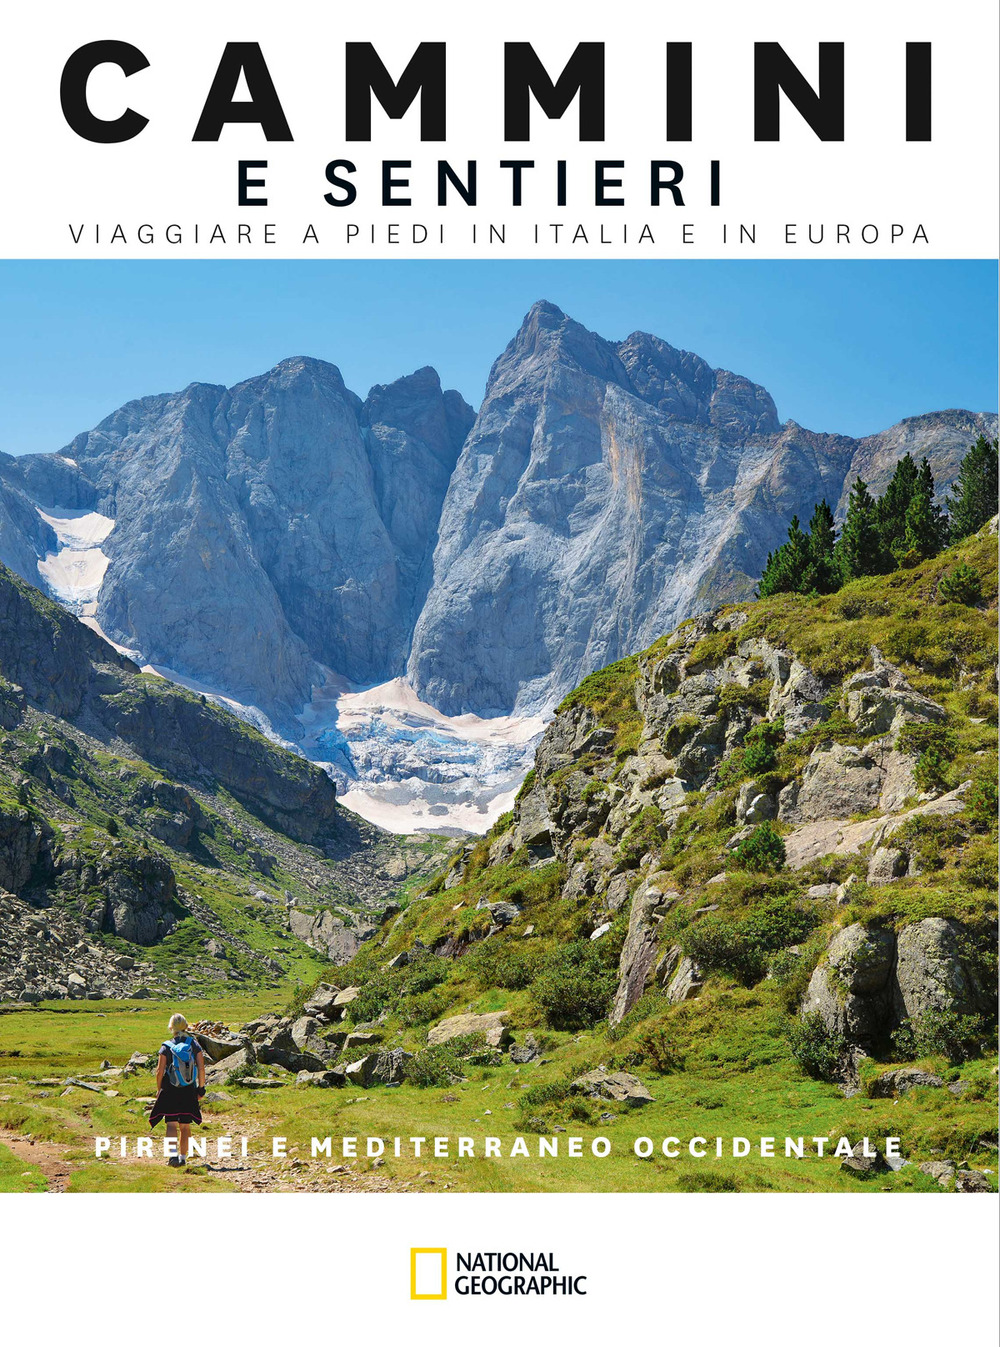 Image of Pirenei e Mediterraneo Occidentale. Cammini e sentieri. Viaggiare a piedi in Italia e in Europa